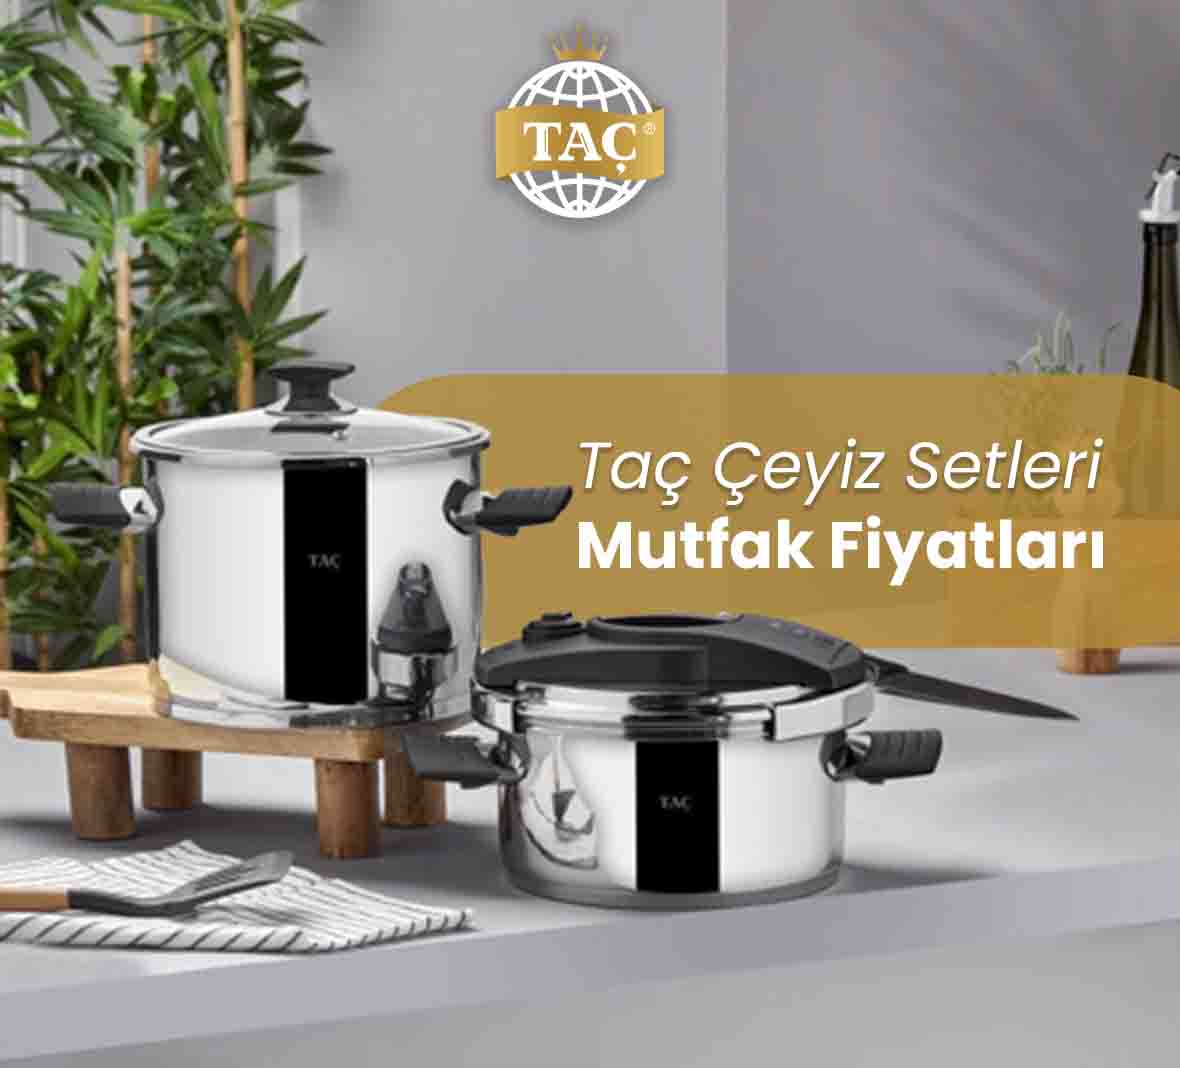 Taç Çeyiz Setleri Mutfak Fiyatları - Tacev.com